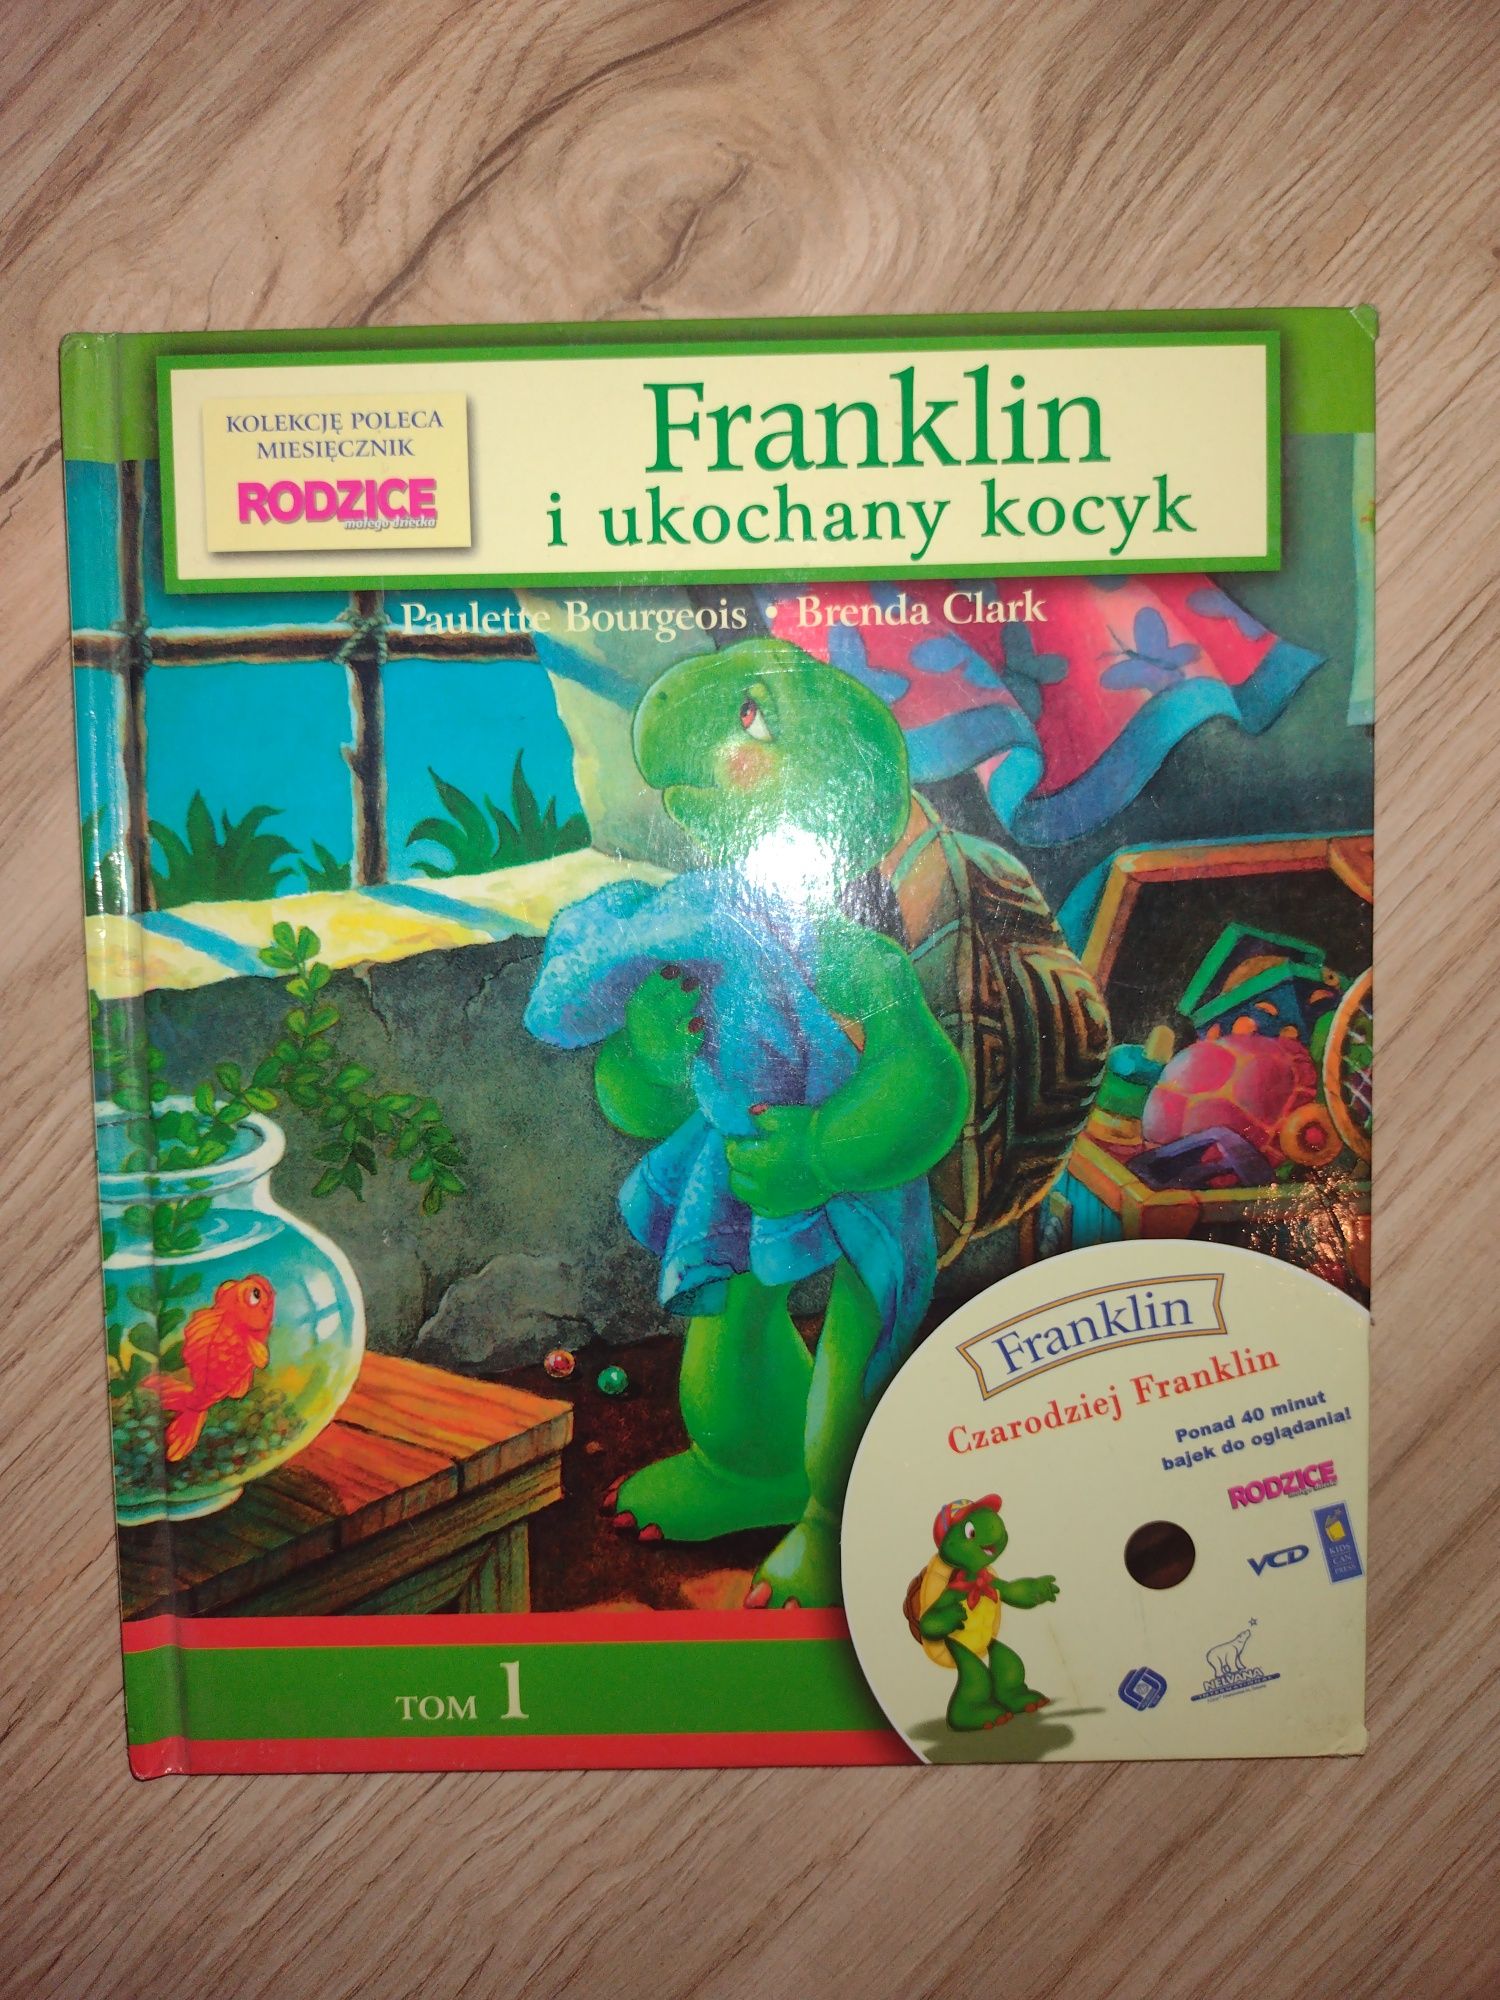 Franklin i ukochany kocyk Książka dla dzieci